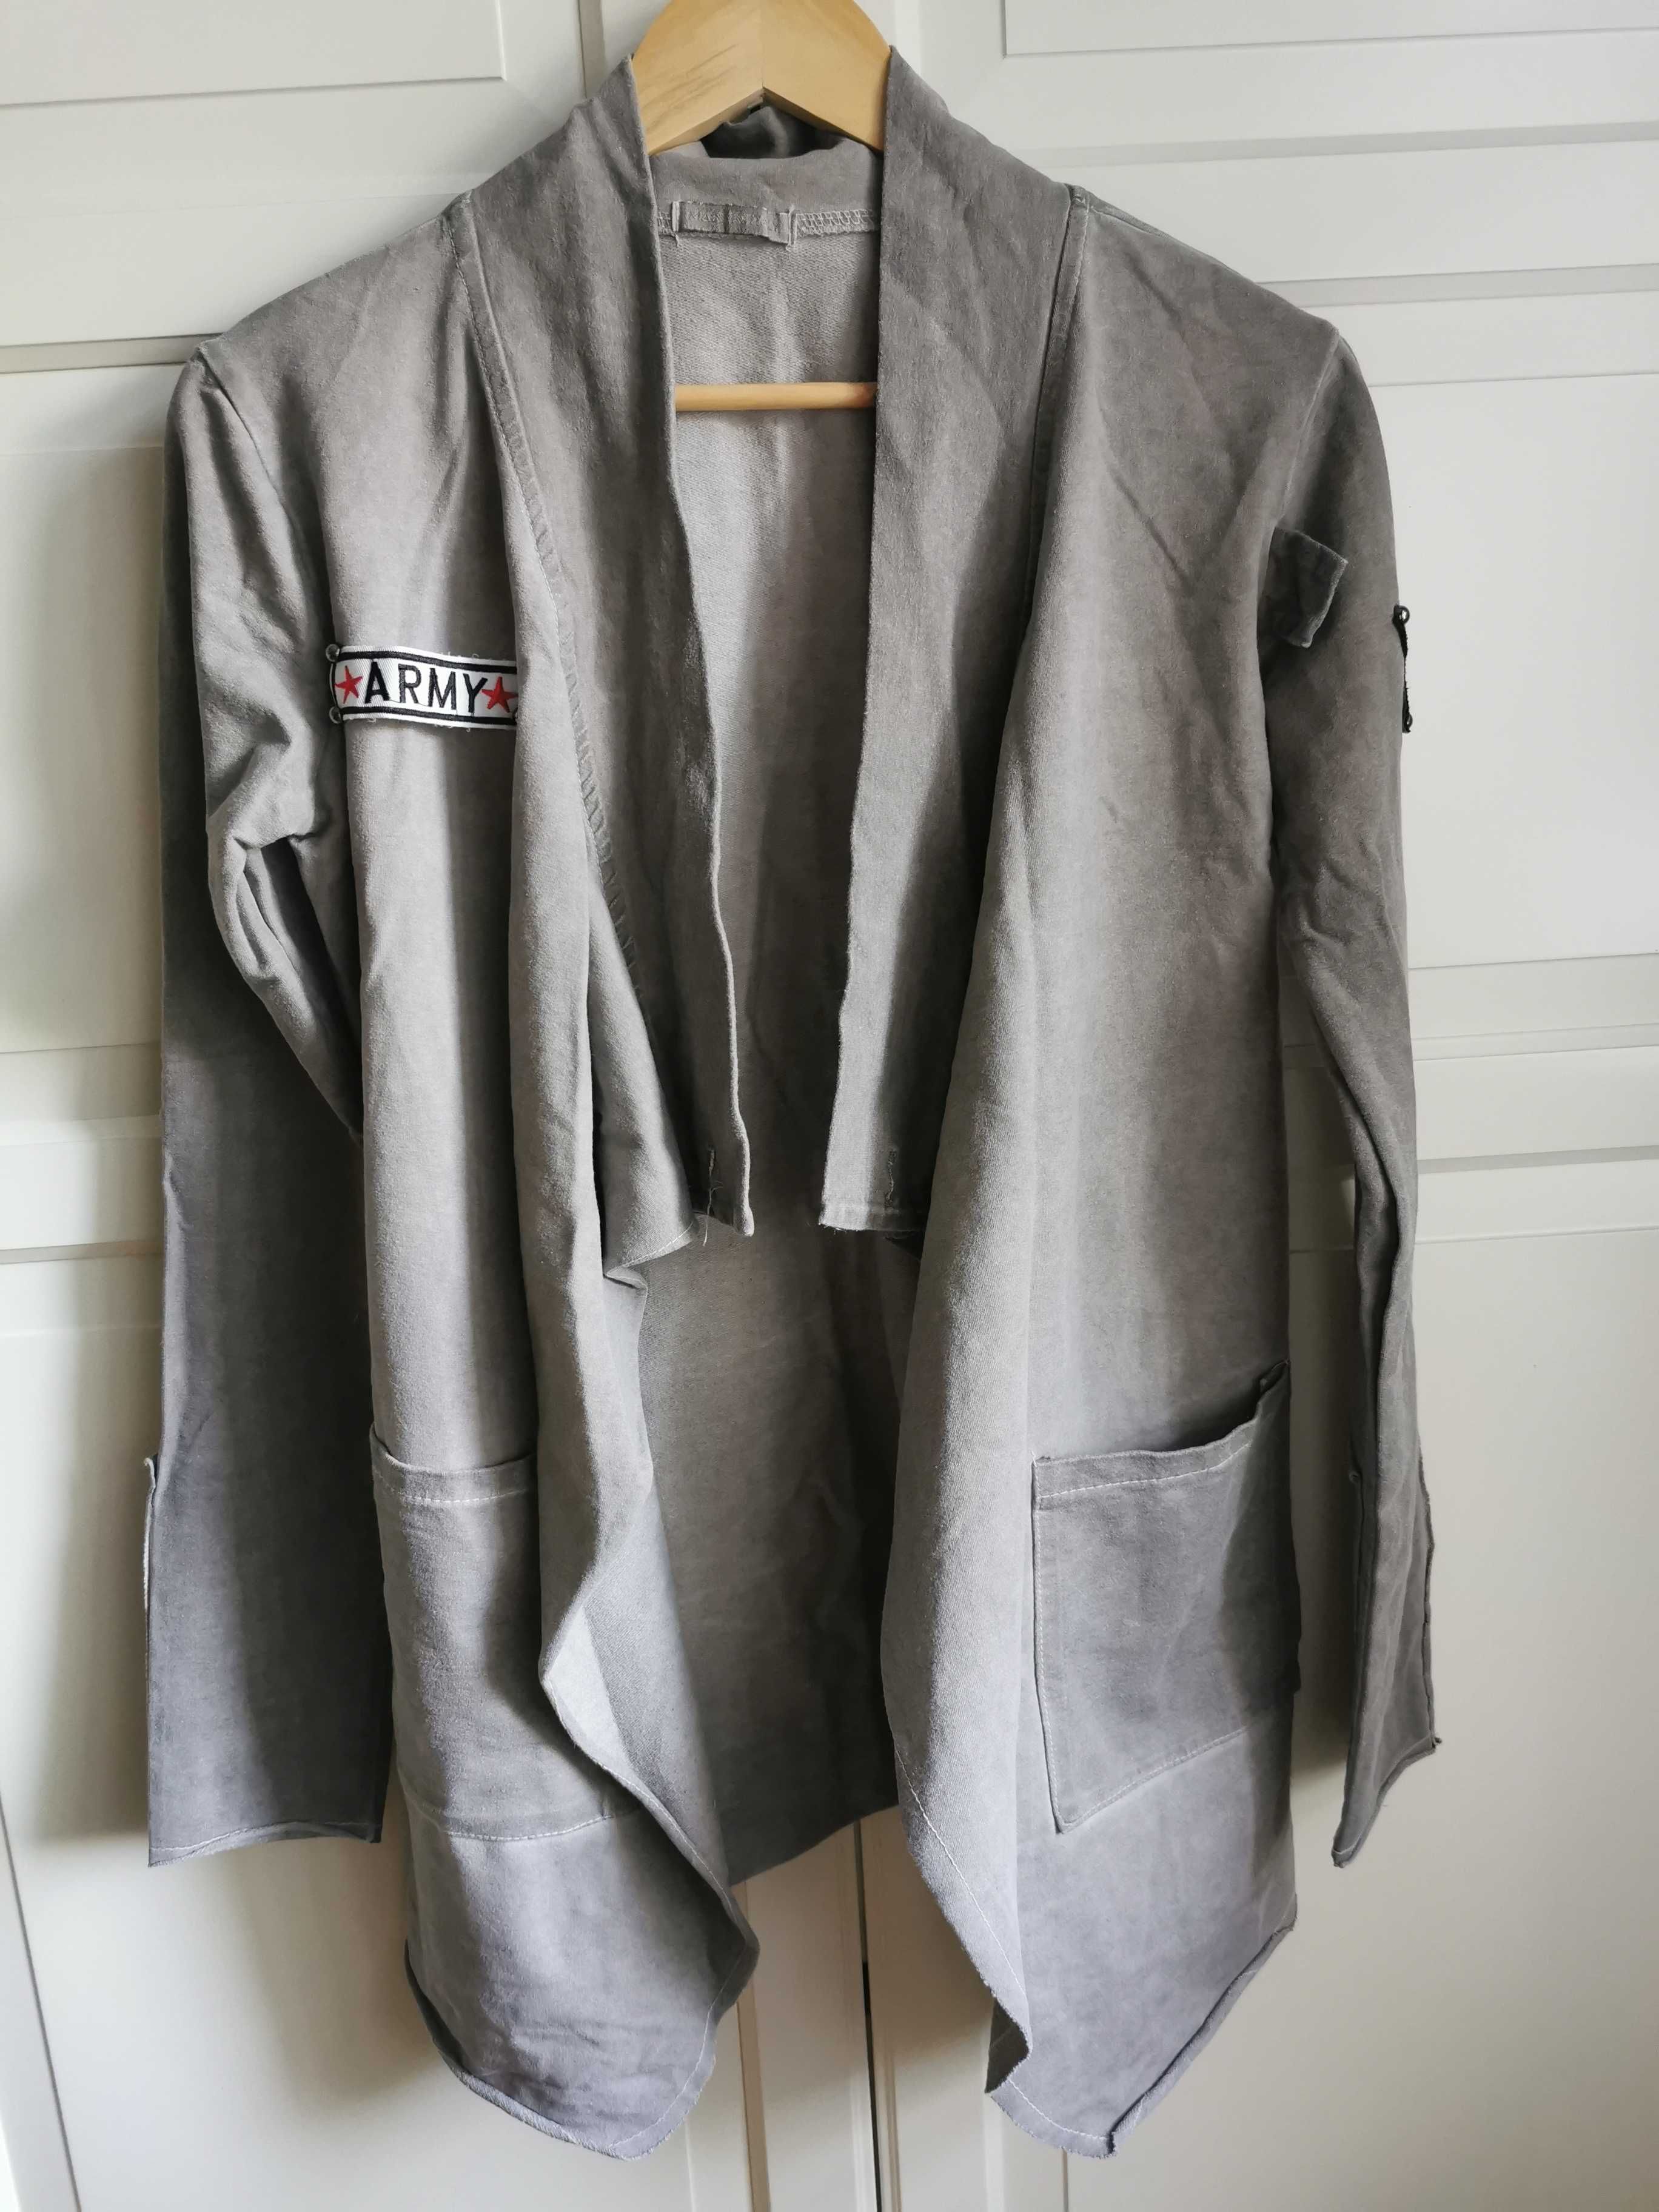 Bluza włoska styl militarny Made in Italy kardigan luźna naszywki